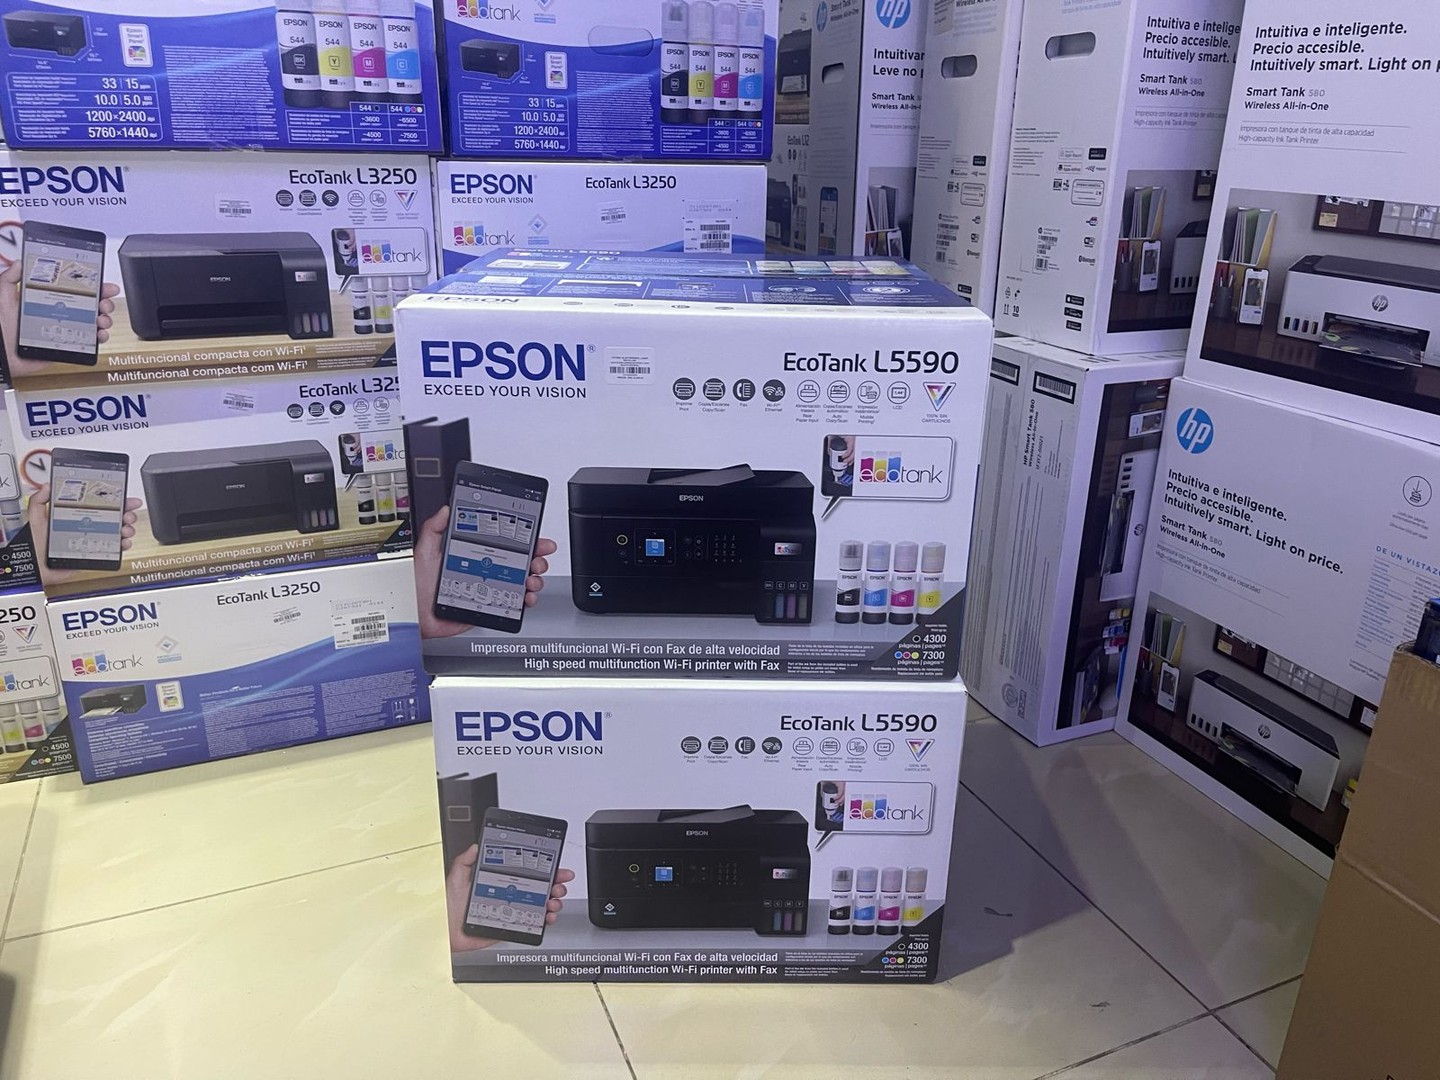 impresoras y scanners - Epson EcoTank L5590 Conexión al Celular Nueva Disponibles 6